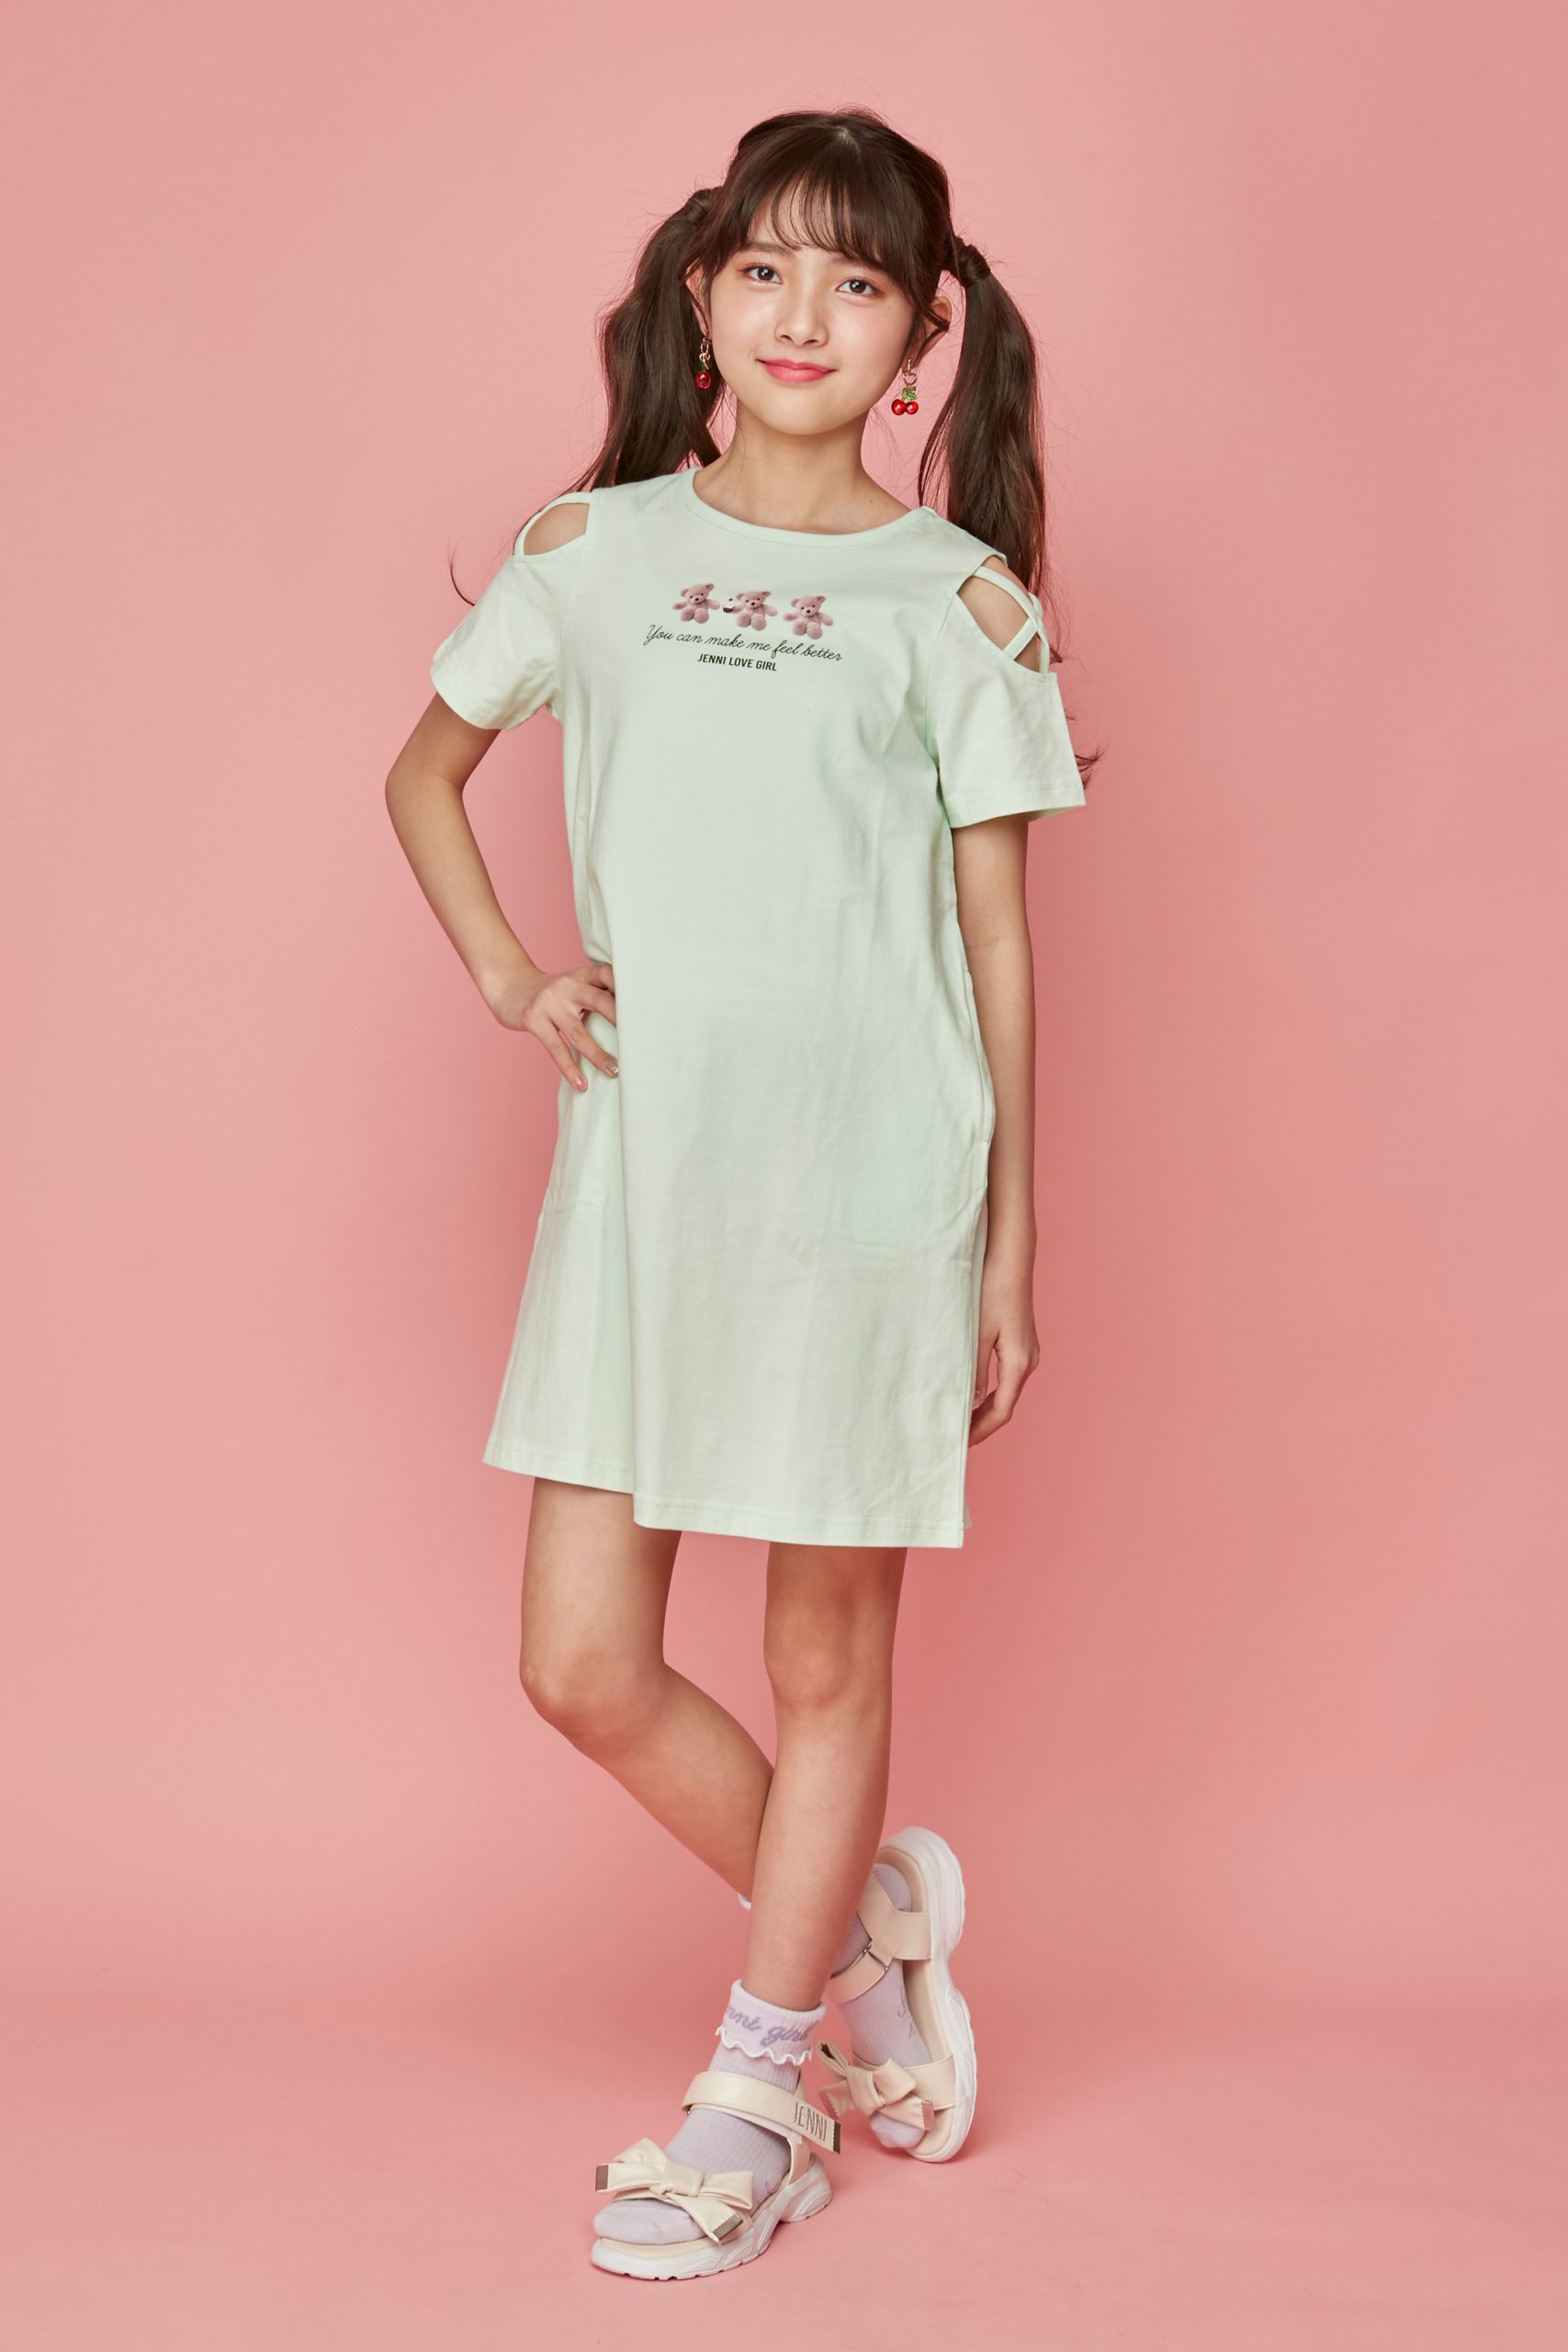 子供服ブランドJENNI（ジェニィ）のオフィシャルサイト